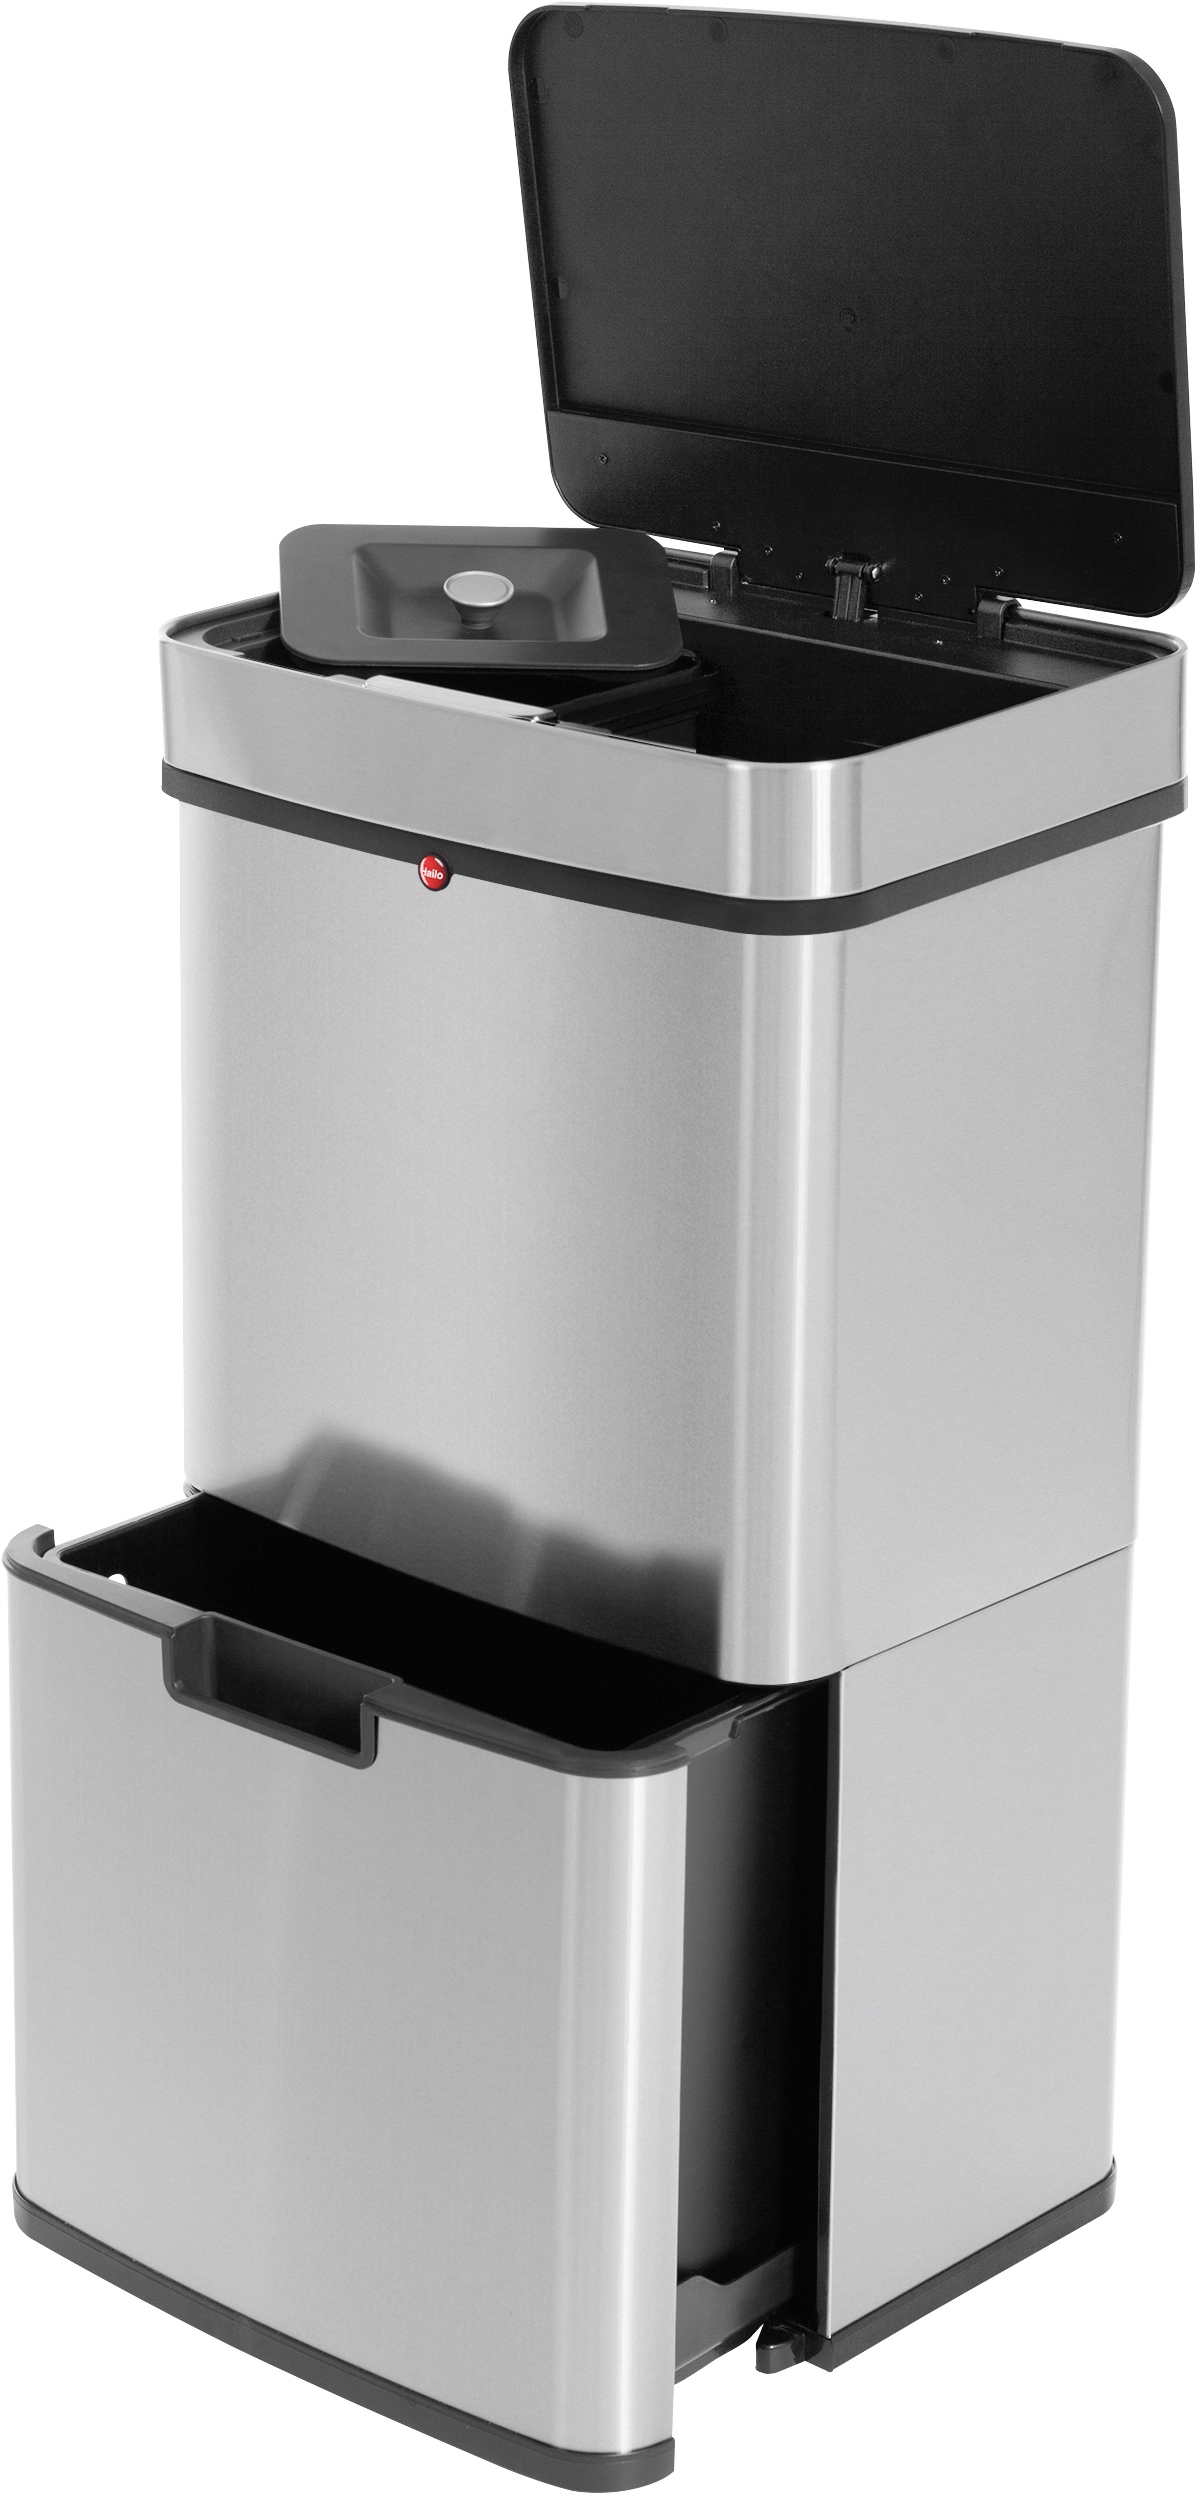 Hailo Mülltrennsystem »Öko Vario XL«, 3 Behälter, 54 Liter, Edelstahl, Kunststoff Inneneimer, Sensortechnik